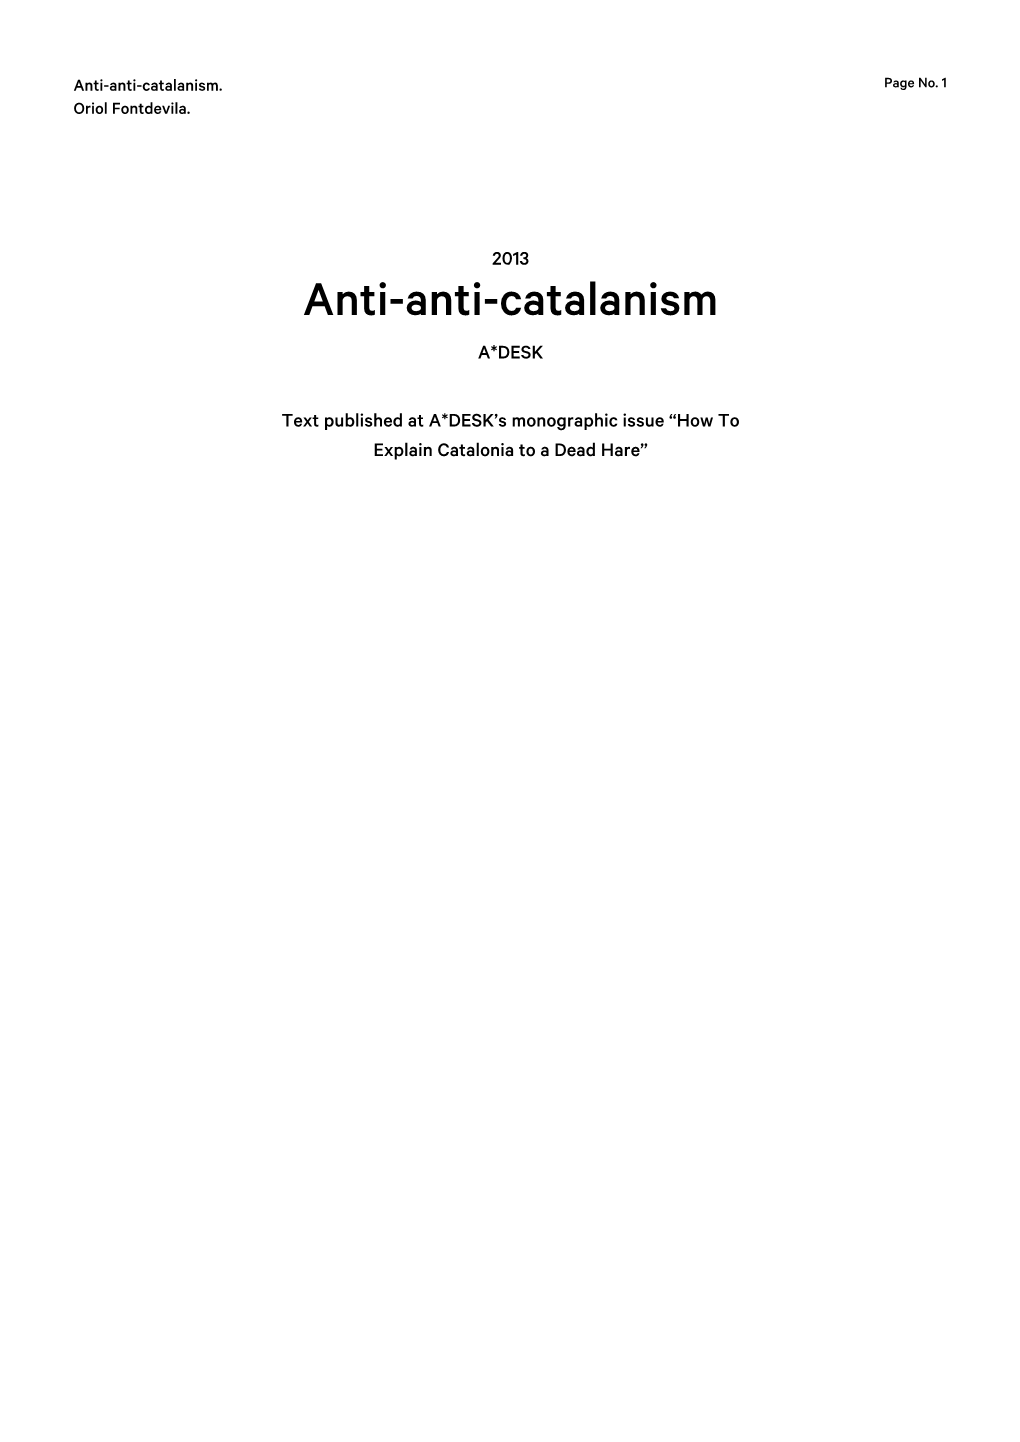 Anti-Anti-Catalanism